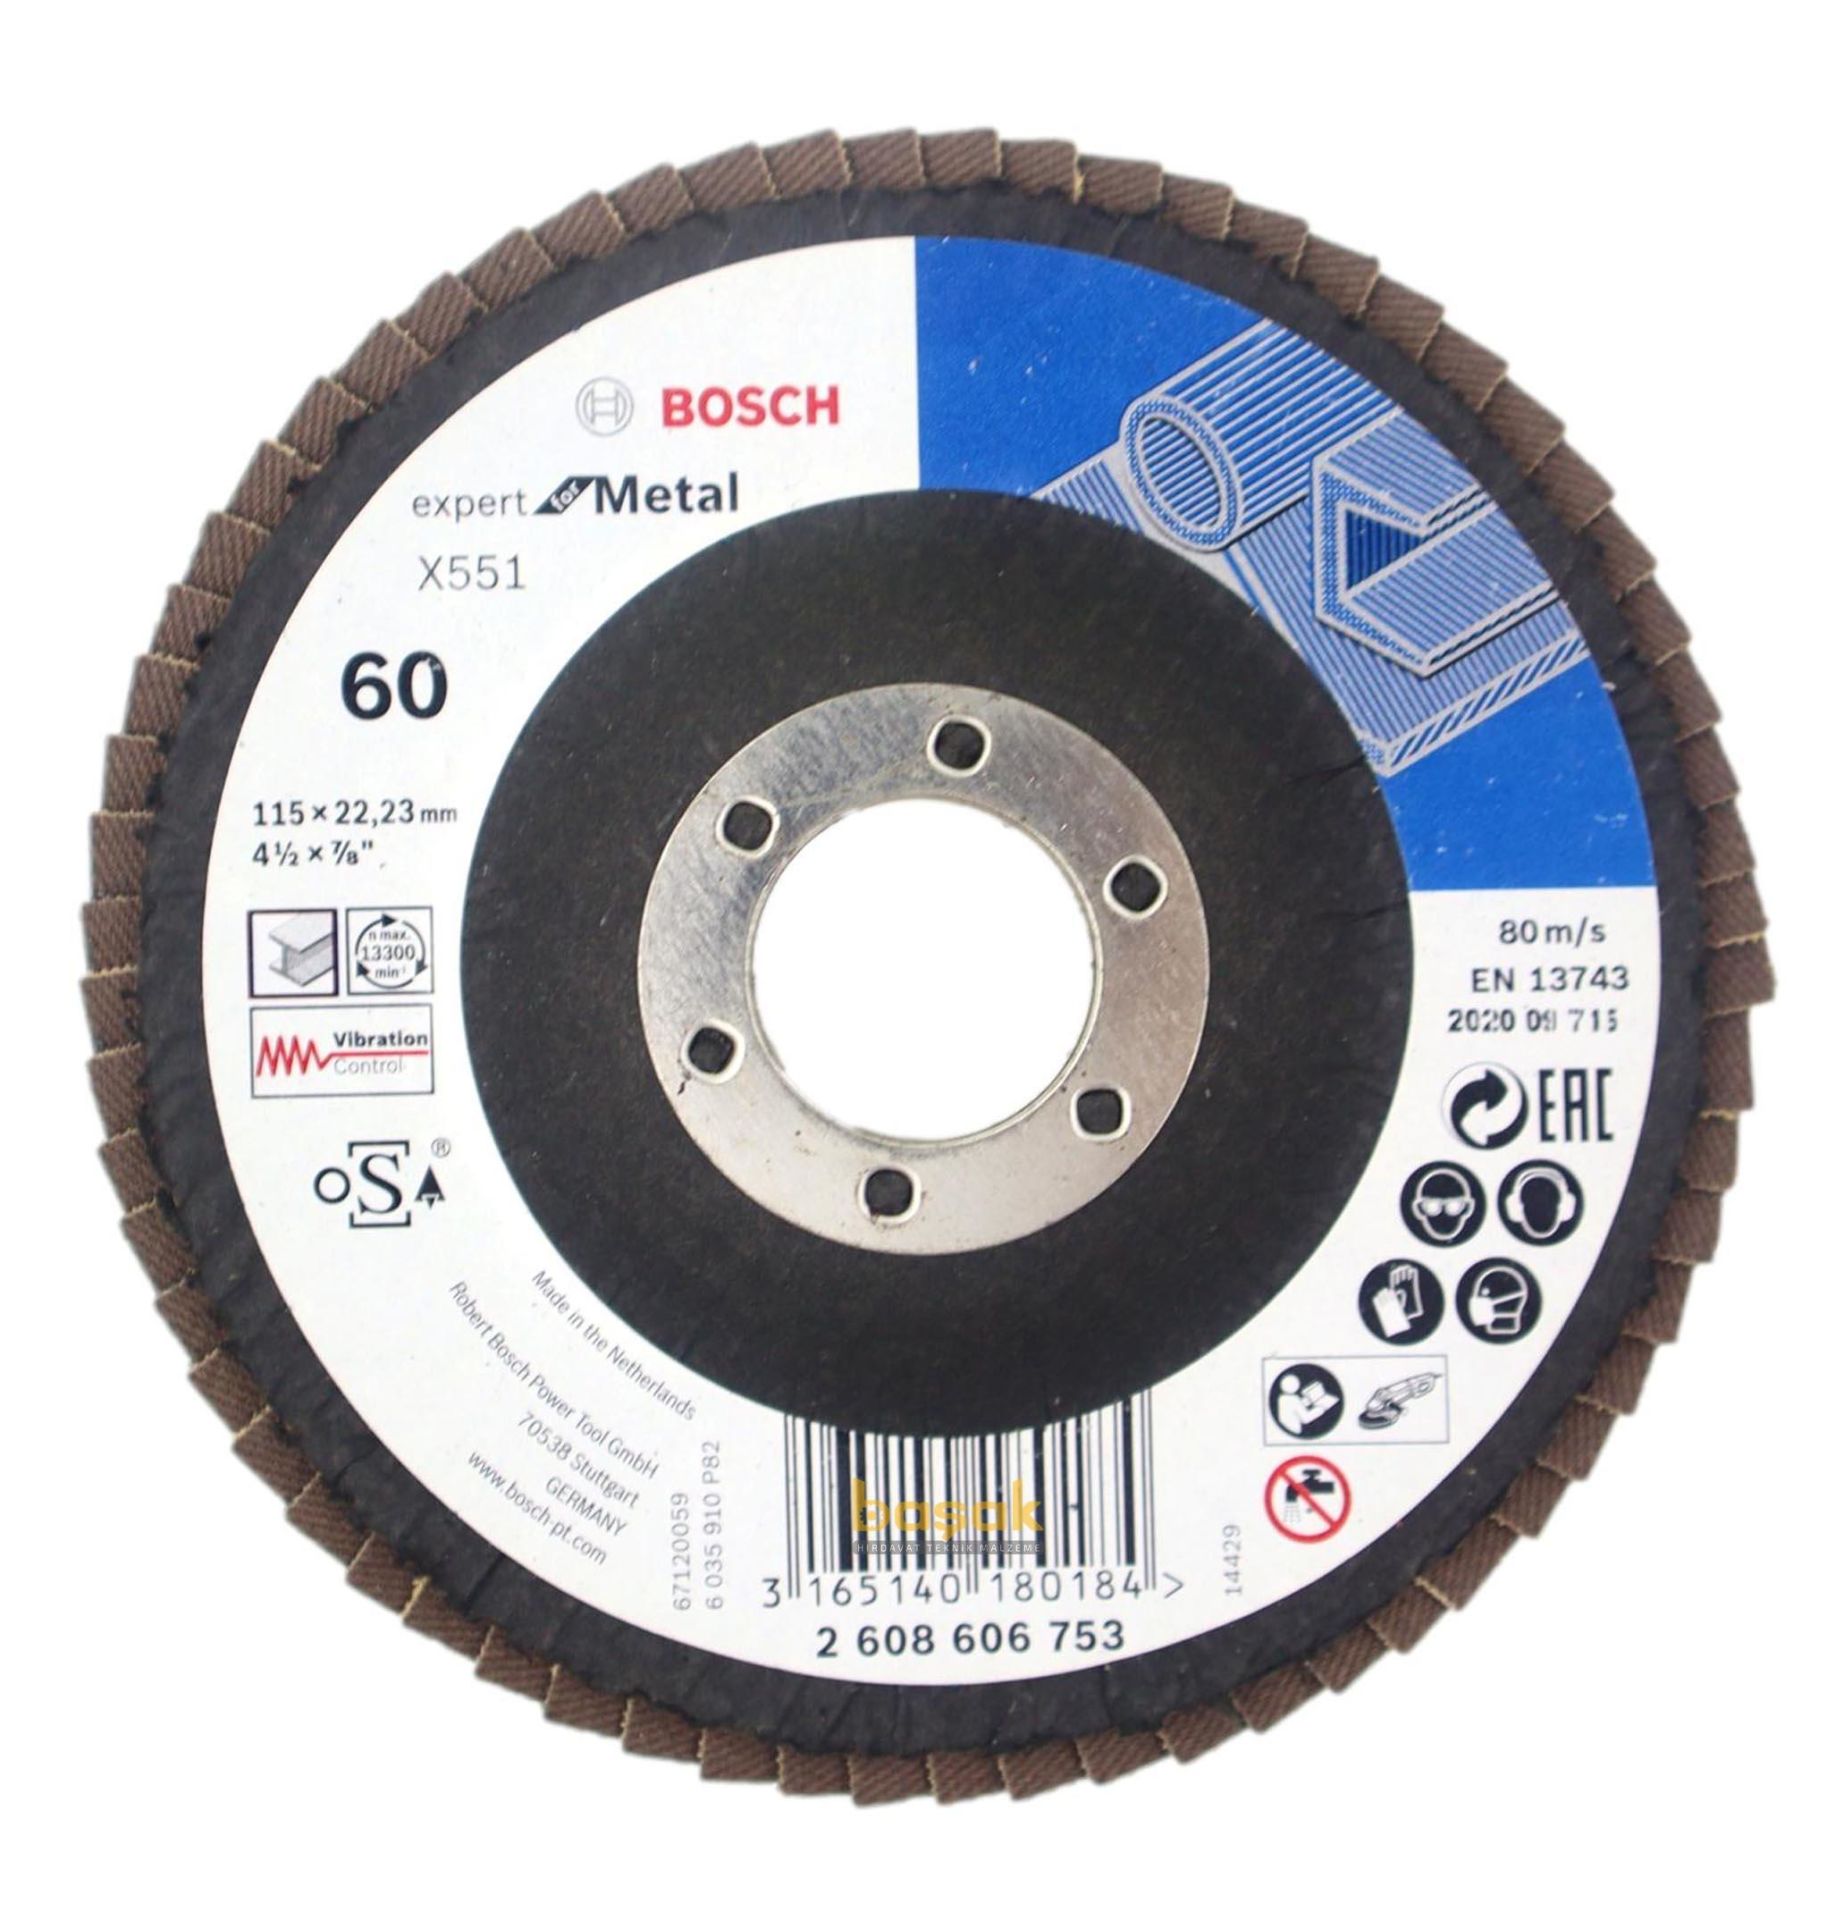 Bosch 115 mm 60 Kum X551 Expert İnox-Metal Flap Disk 2608606753